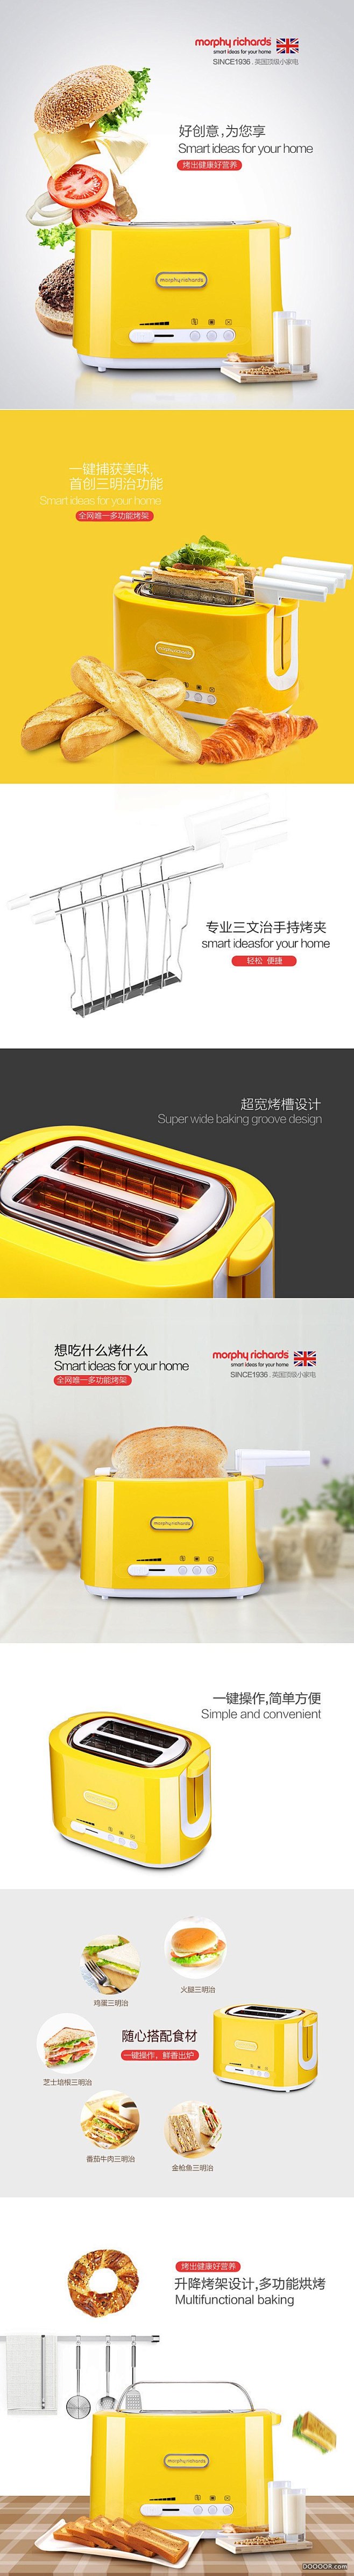 新型烤面包机 首创烘培三明治功能 1.j...